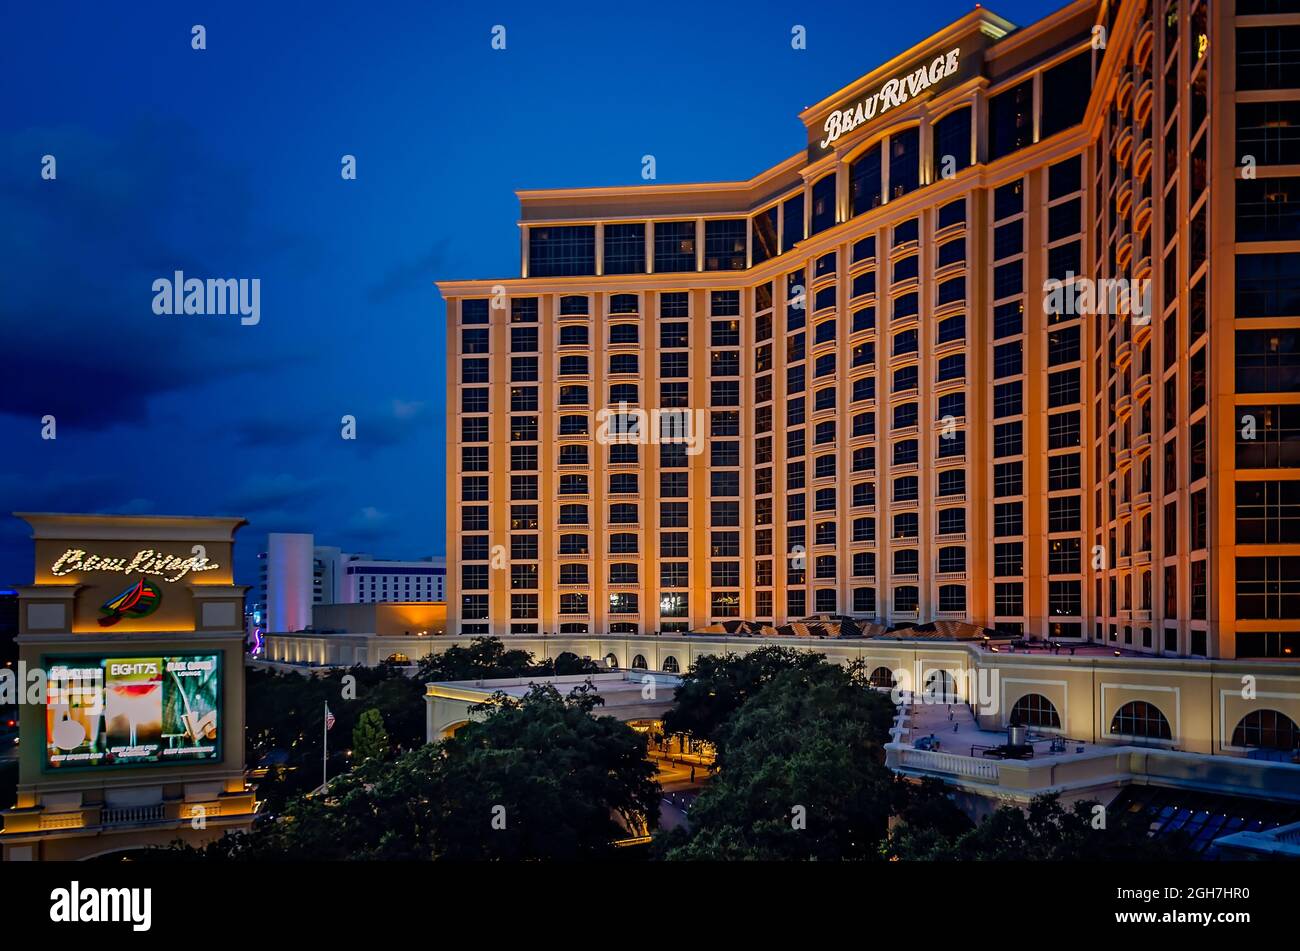 Das Beau Rivage Casino ist am 5. September 2021 in Biloxi, Mississippi, abgebildet. Beau Rivage gehört und wird von MGM Resorts International betrieben. Stockfoto